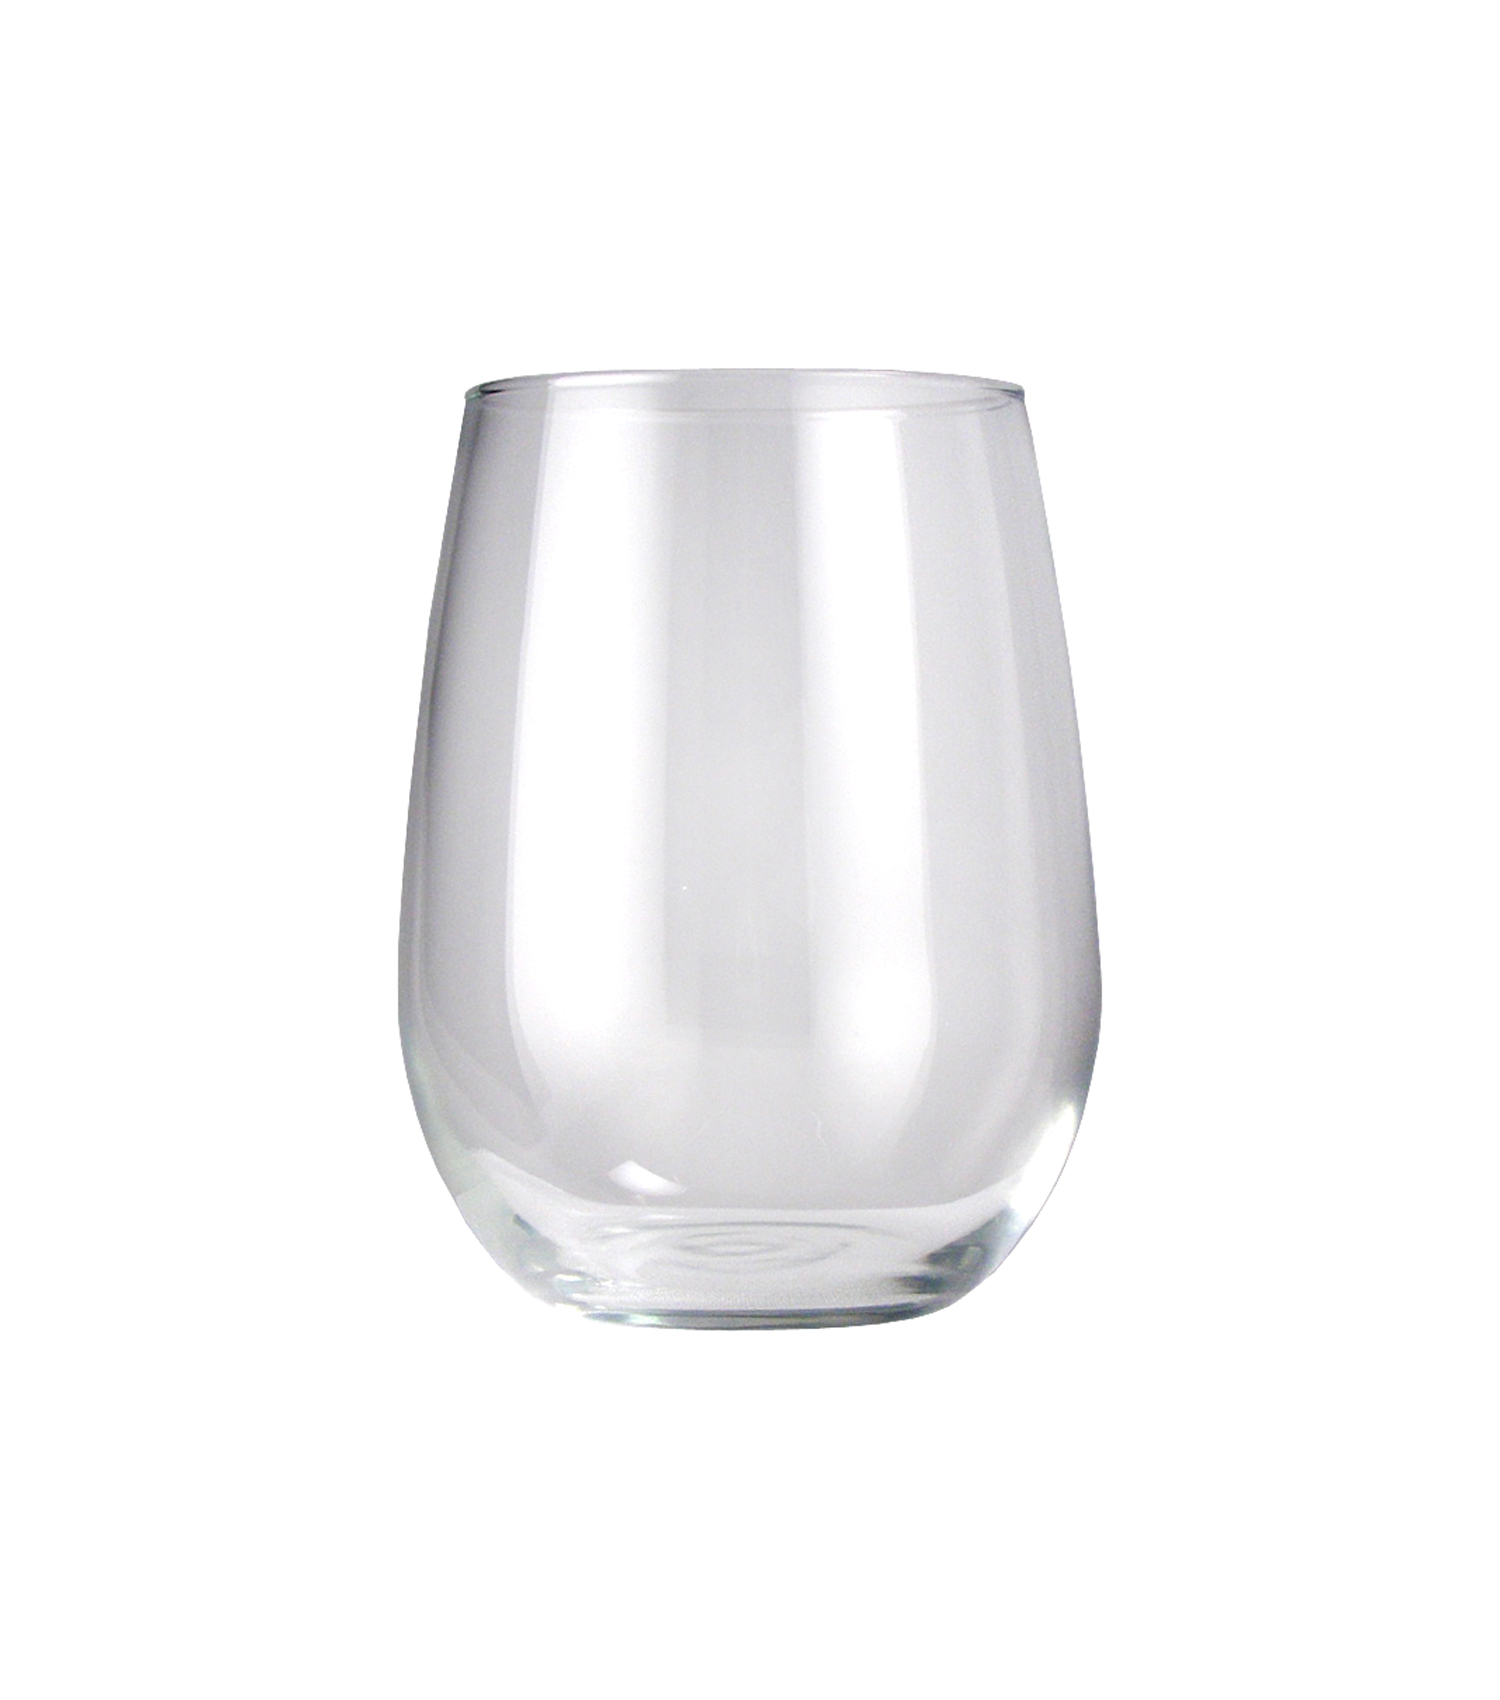 16.75 oz White Wine Glass